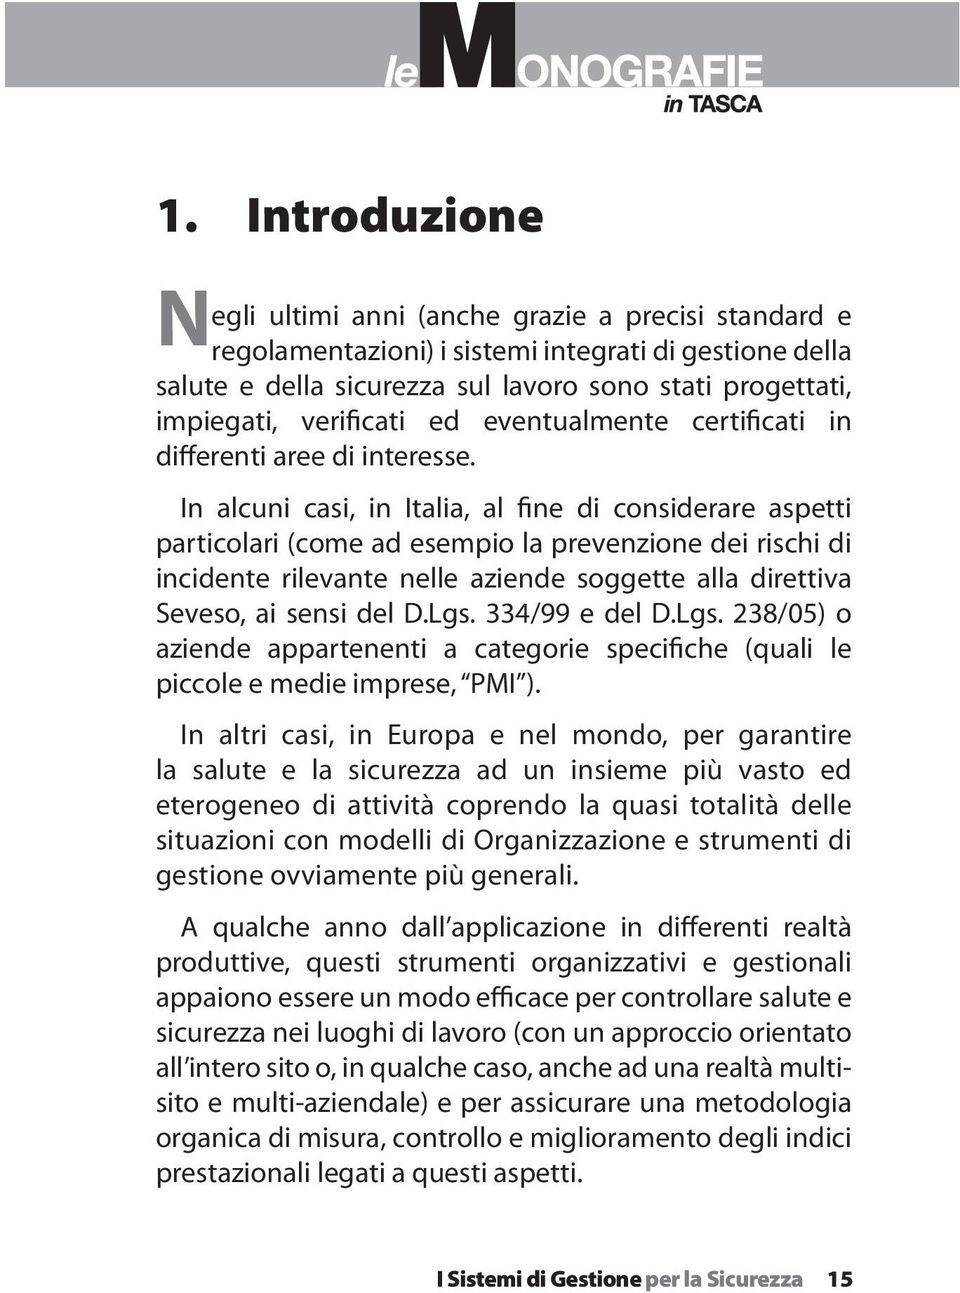 In alcuni casi, in Italia, al fine di considerare aspetti particolari (come ad esempio la prevenzione dei rischi di incidente rilevante nelle aziende soggette alla direttiva Seveso, ai sensi del D.